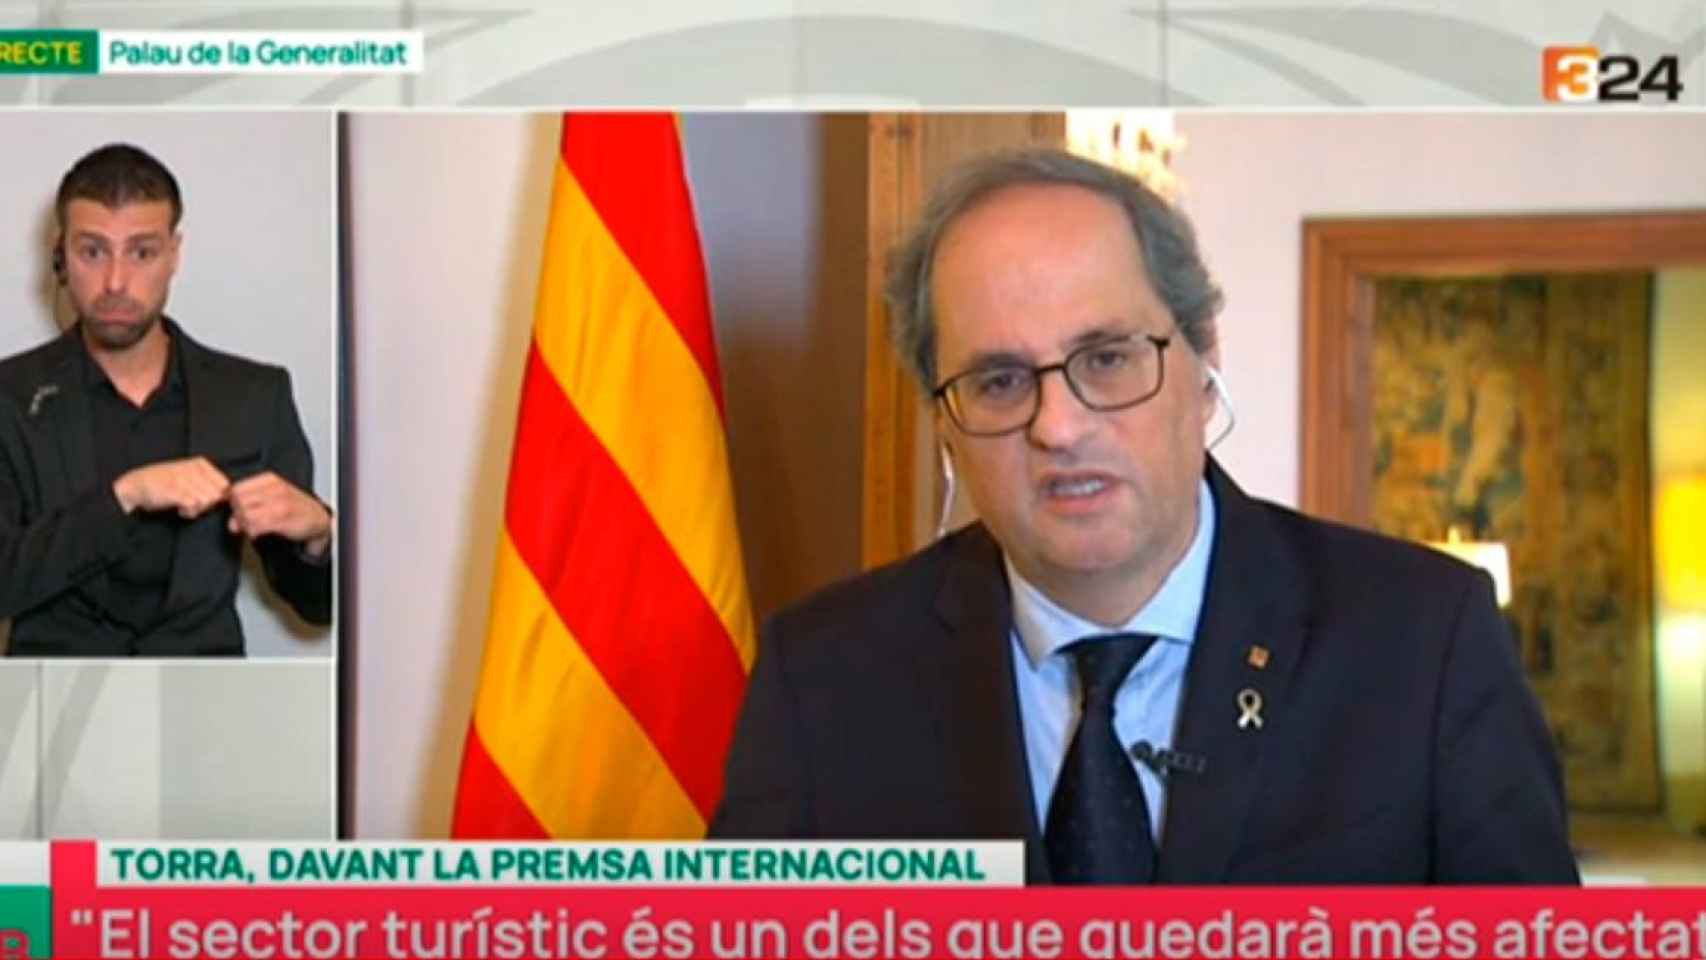 El presidente de la Generalitat, Quim Torra, comparece por vía telemática ante los medios internacionales / TV3